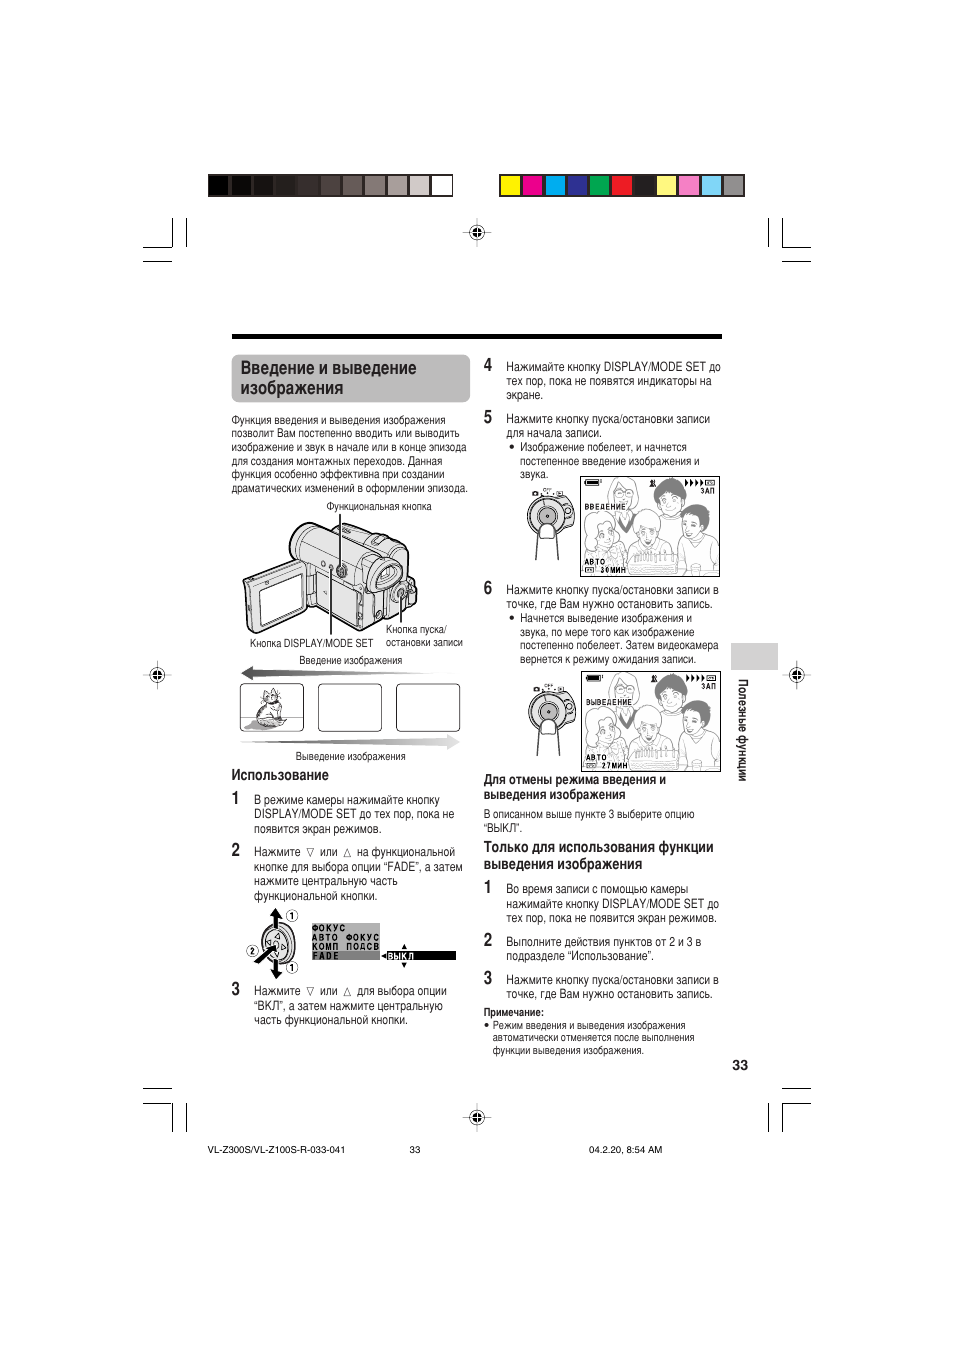 Введение и выведение изображения, Использование, Для отмены режима введения и выведения изображения | Инструкция по эксплуатации Sharp VL-Z300S | Страница 43 / 96